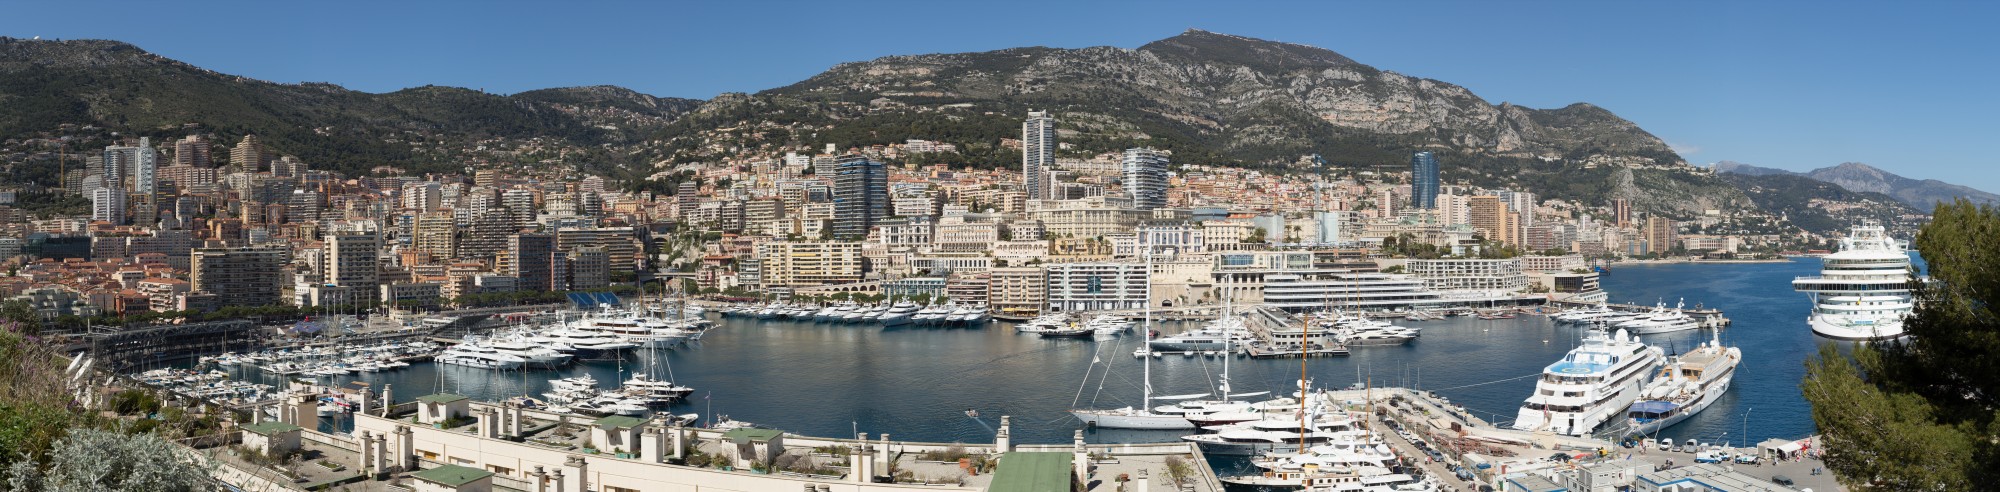 Monaco Panorama 2015